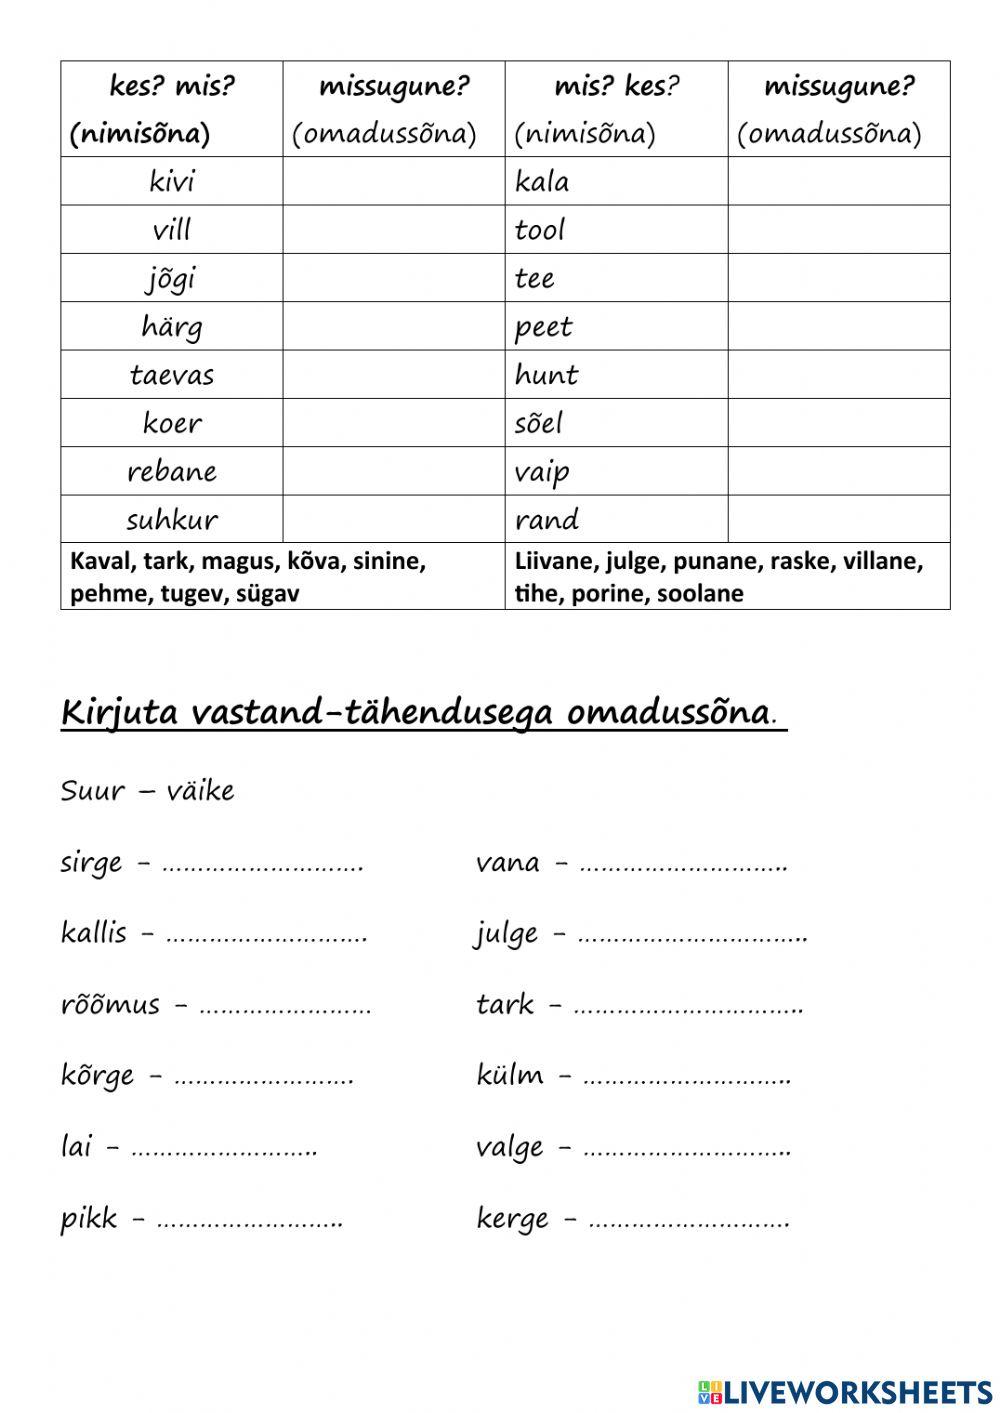 Eesti keel -kordamine (omadussõna)